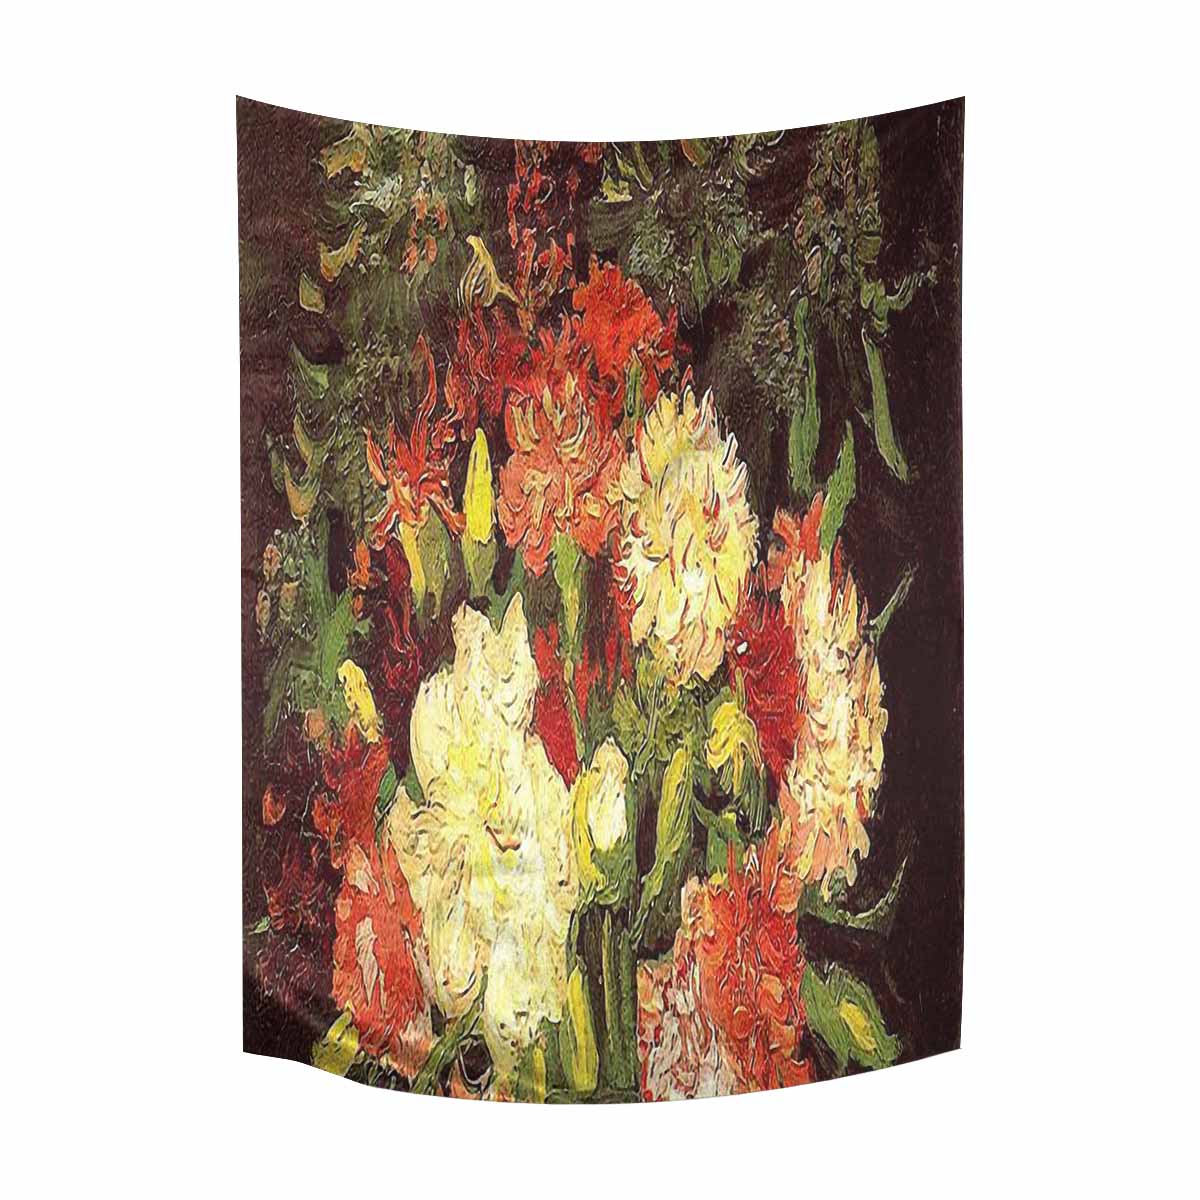 Vintage floral TAPESTRY, LARGE 60 x 80 in, Vertical, Design 33